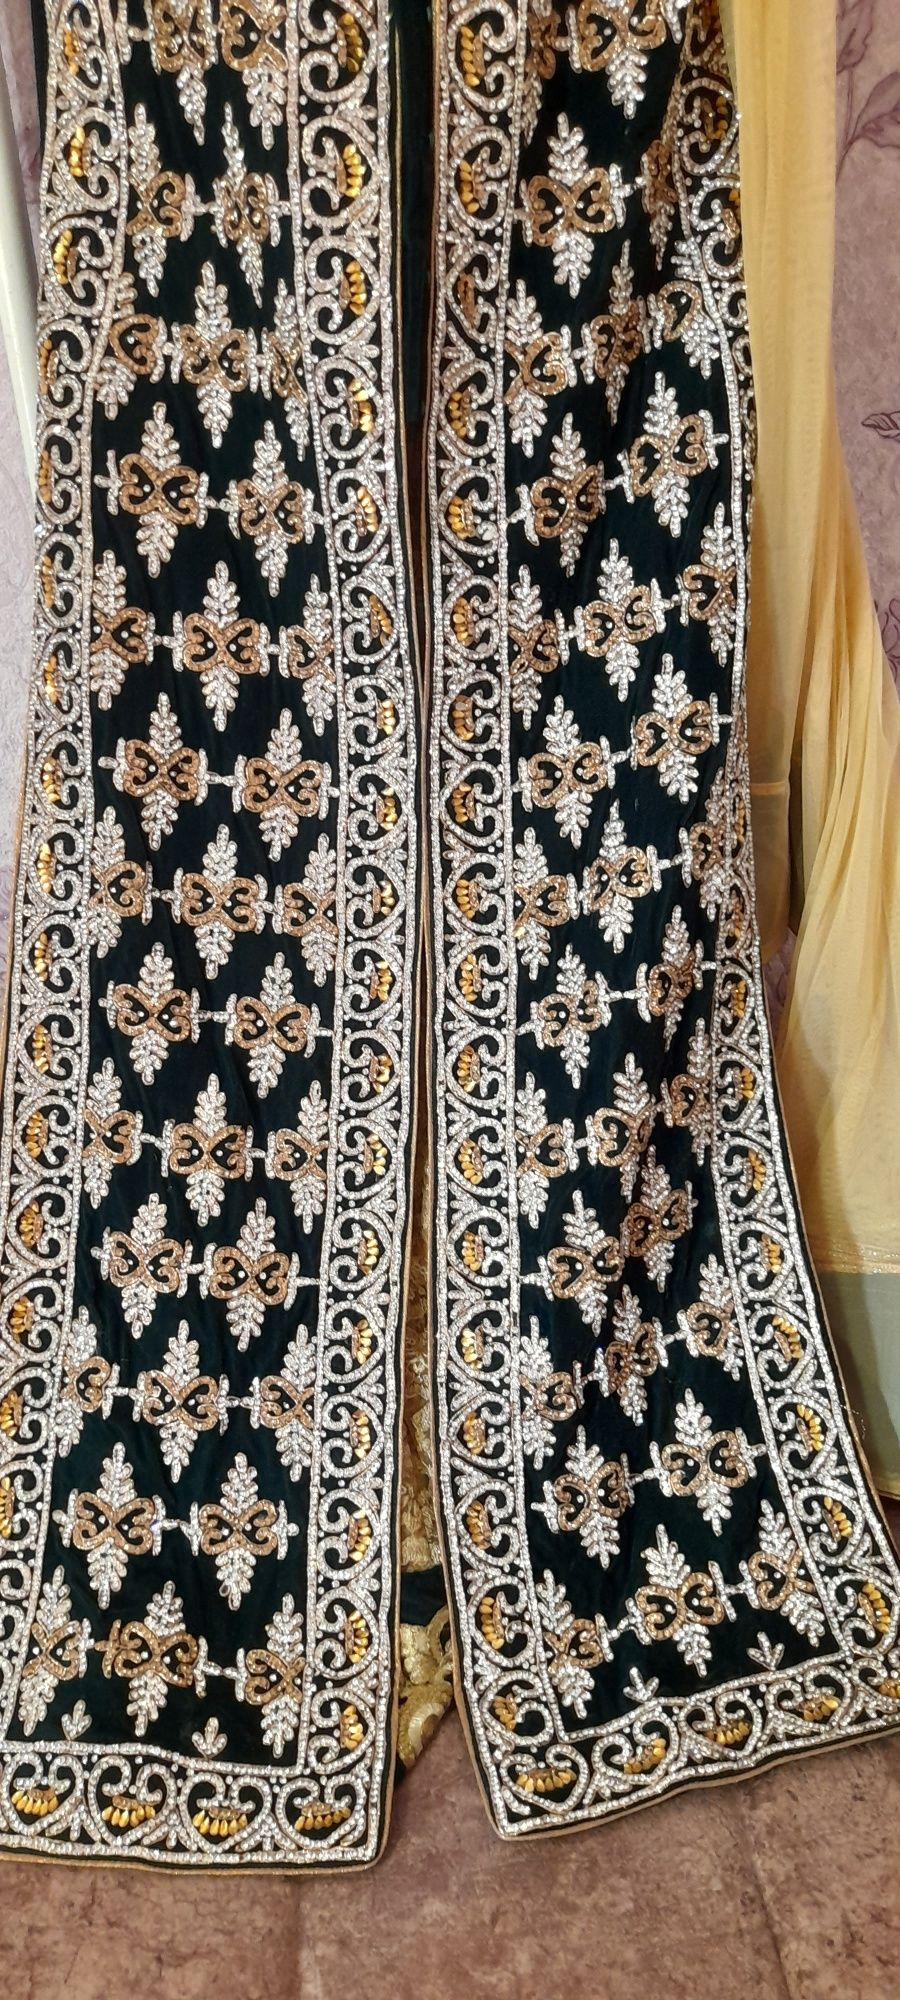 Индийское платье